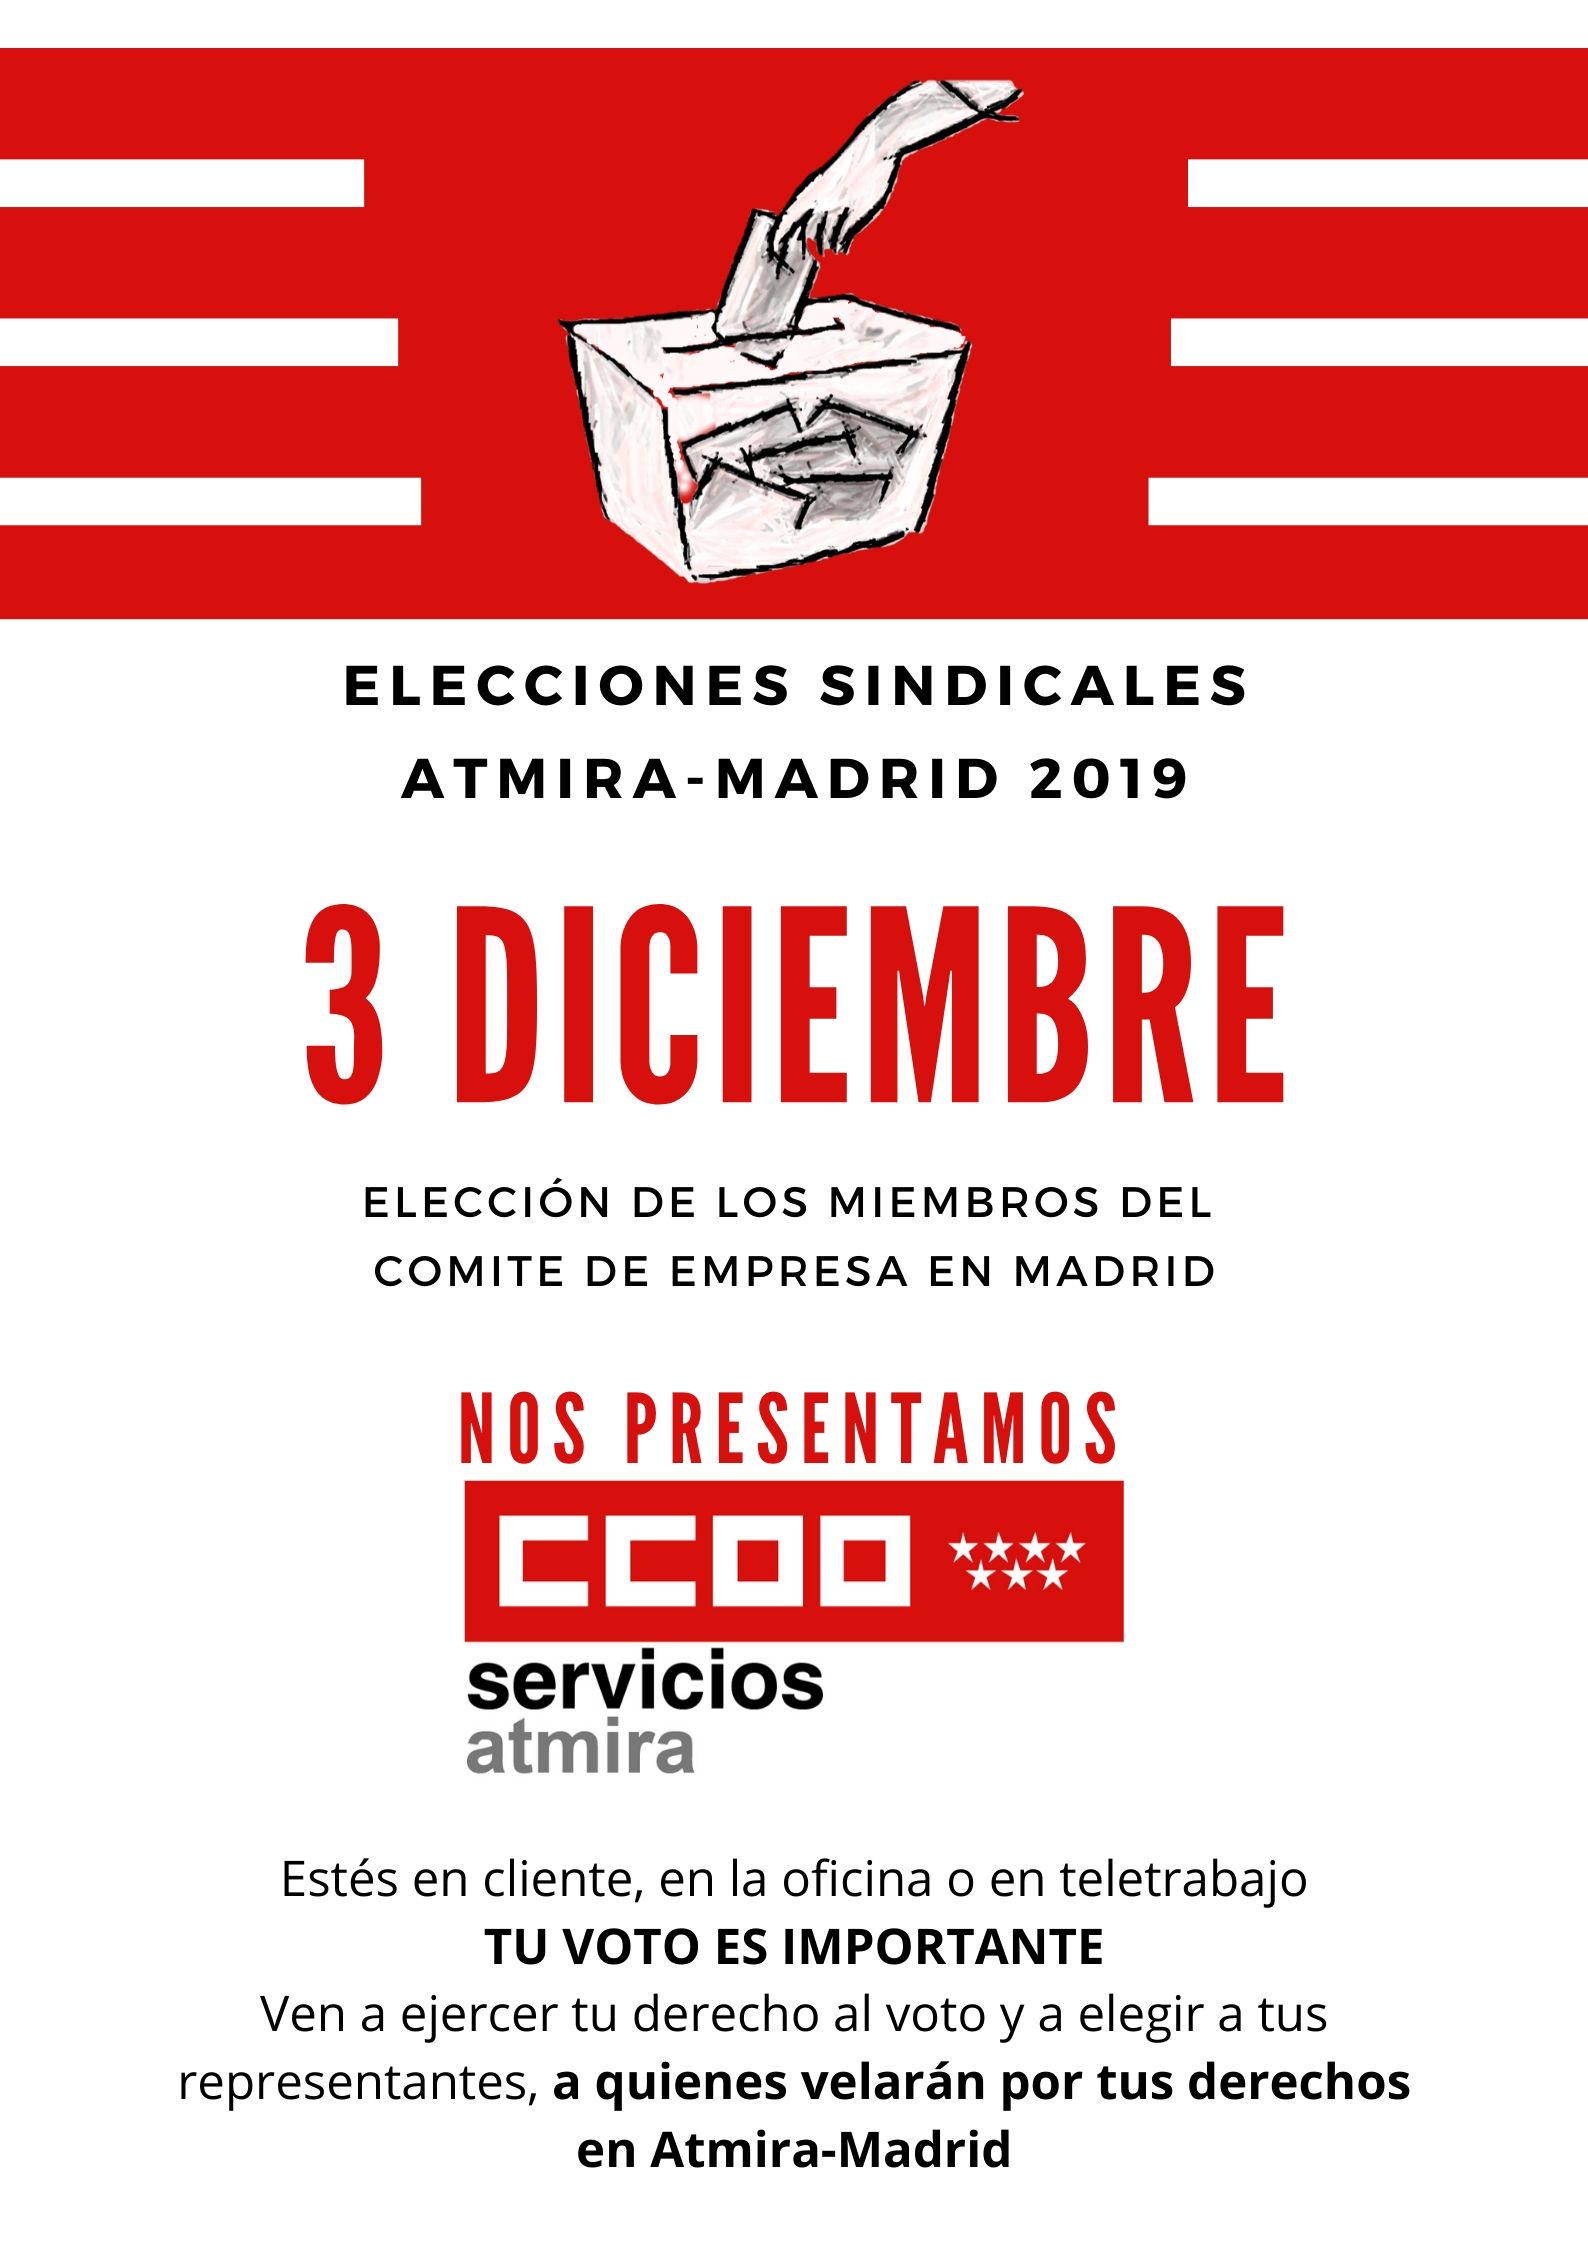 elecciones sindicales atmira-madrid 2019